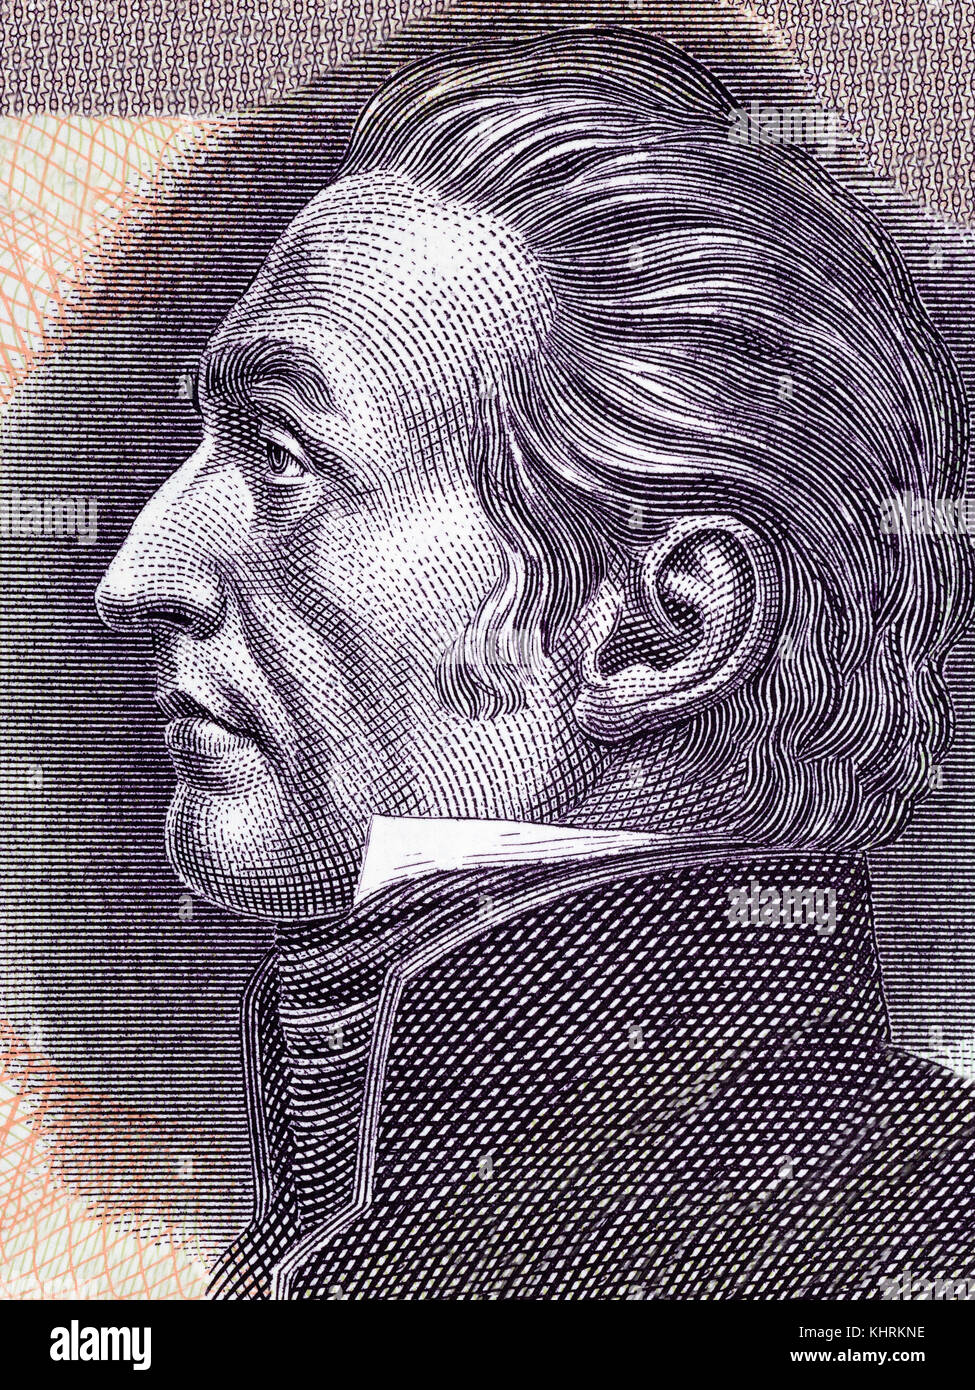 José Gervasio artigas Portrait von uruguayischen Pesos Stockfoto